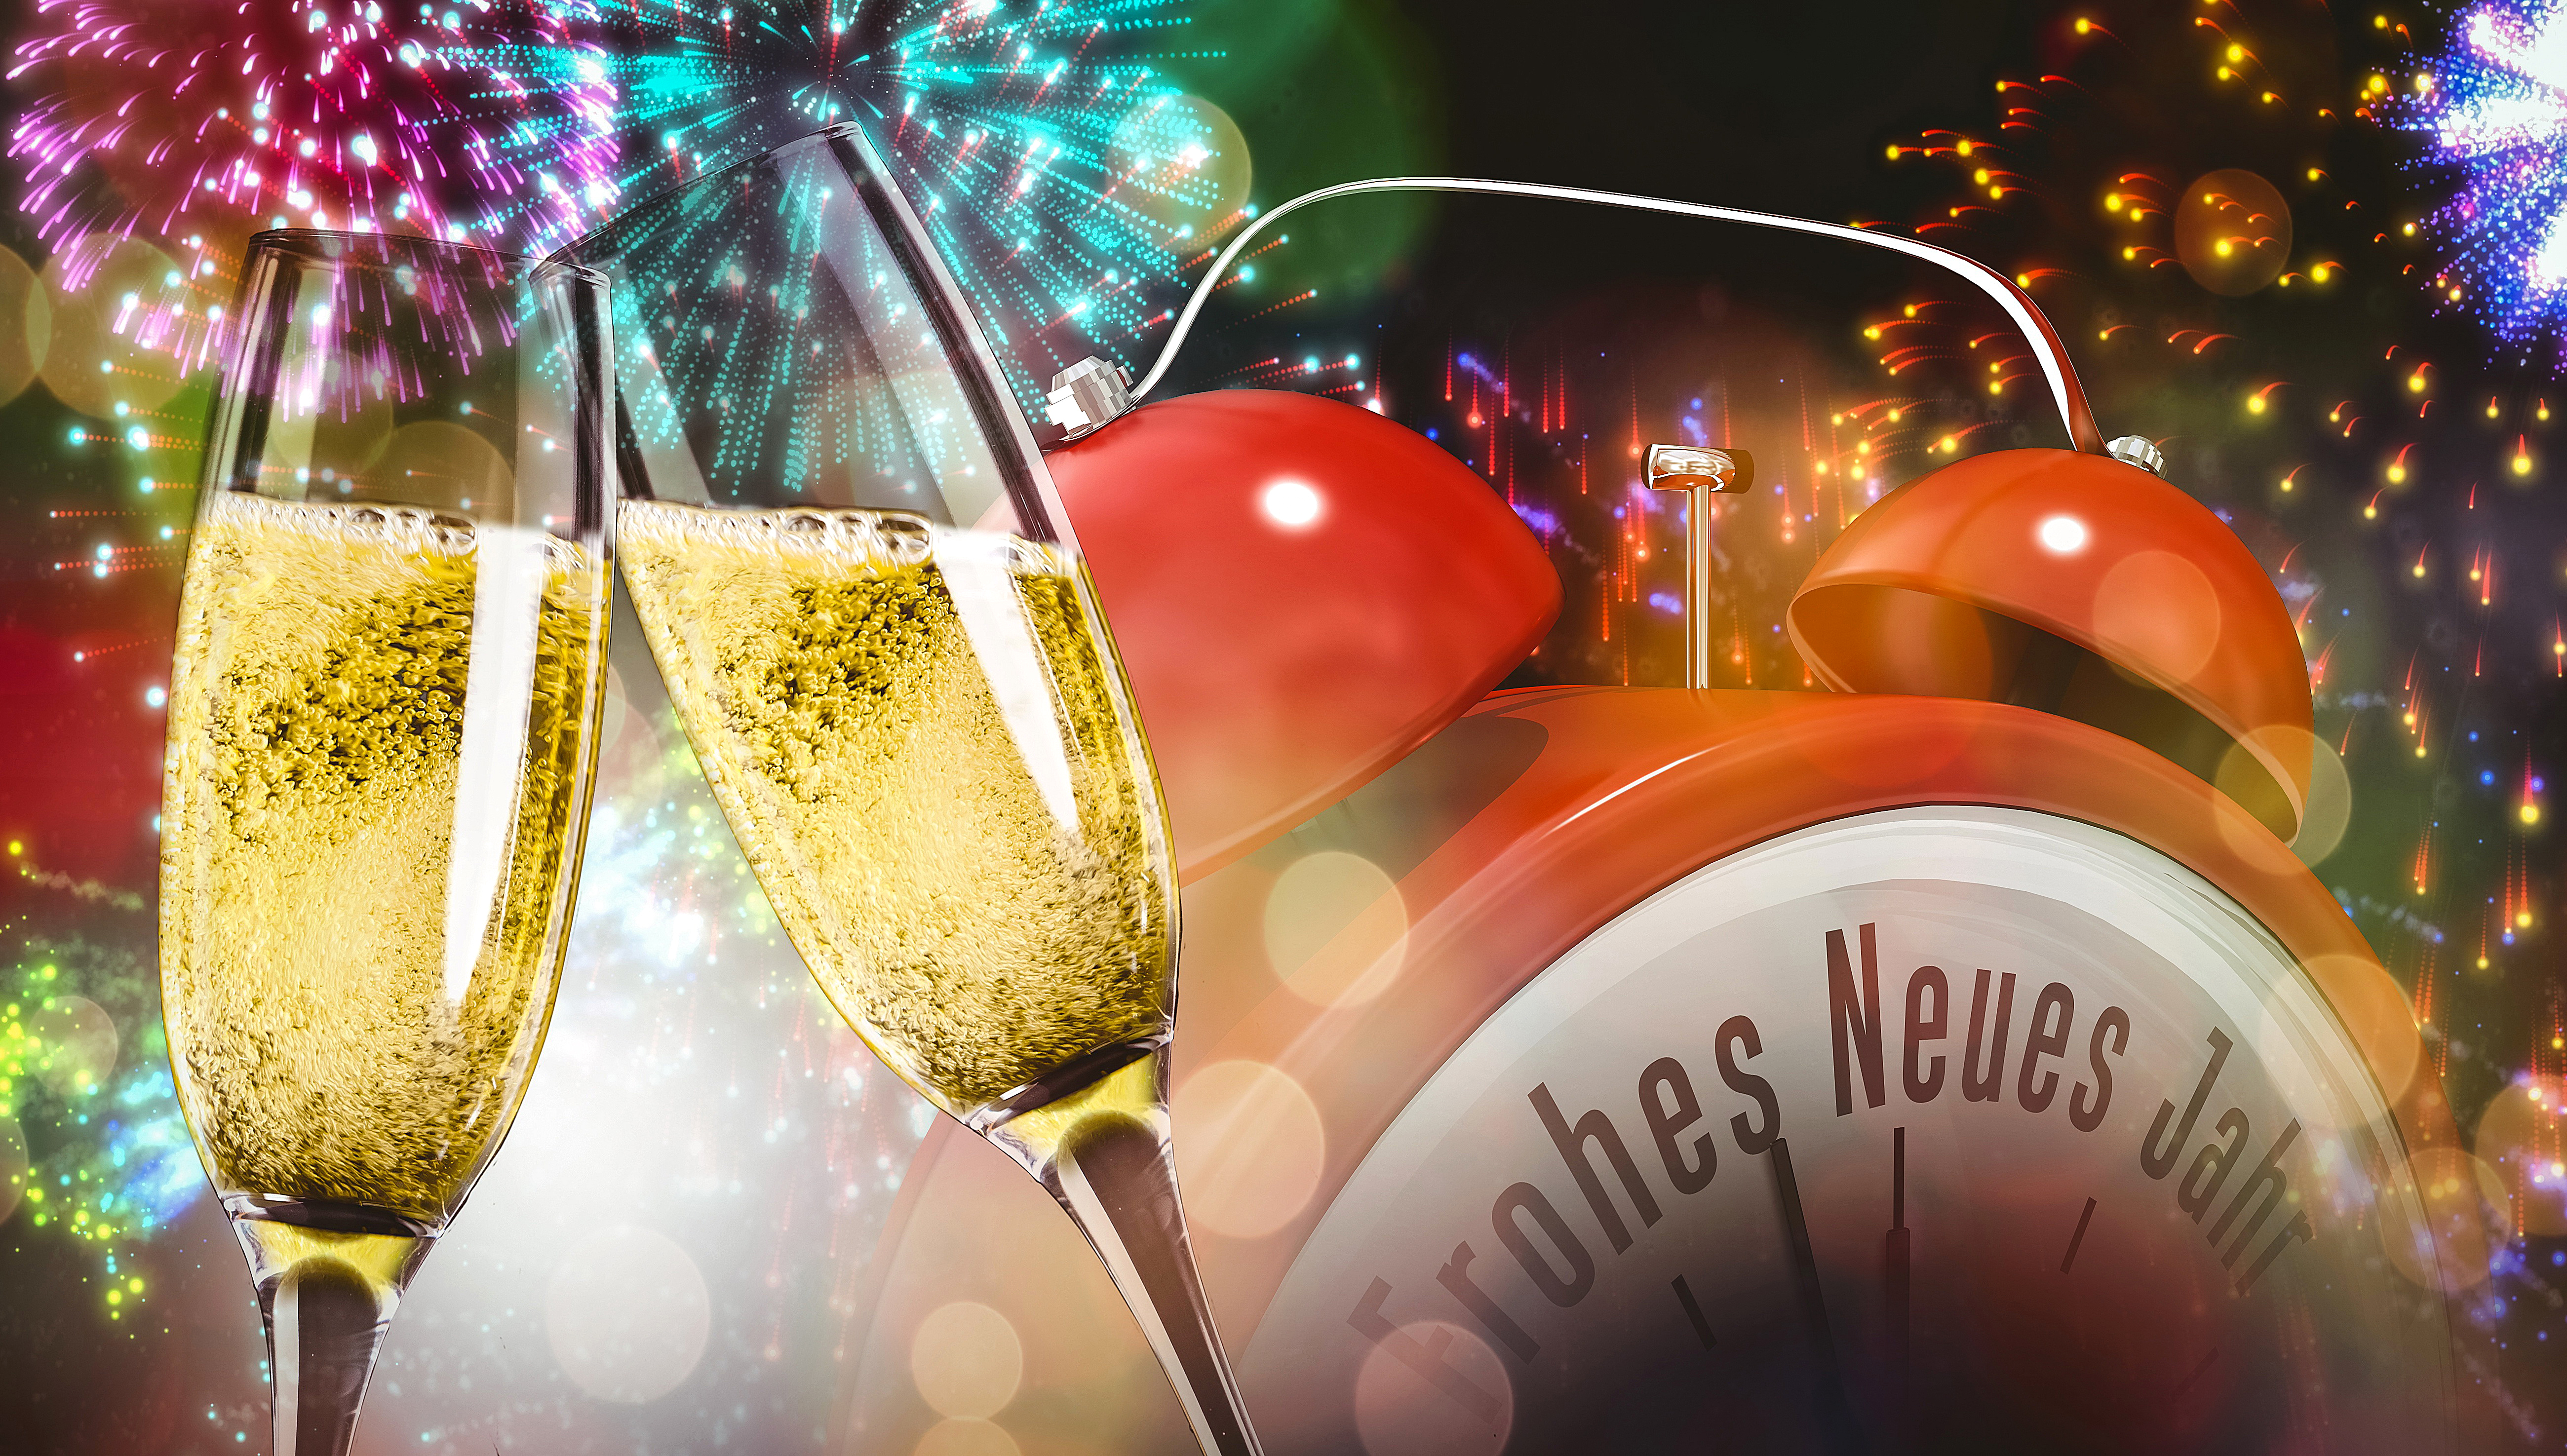 New years special. Шампанское новый год. Новый год (праздник). Шампанское фейерверк. Новогодний стол с фейерверком.